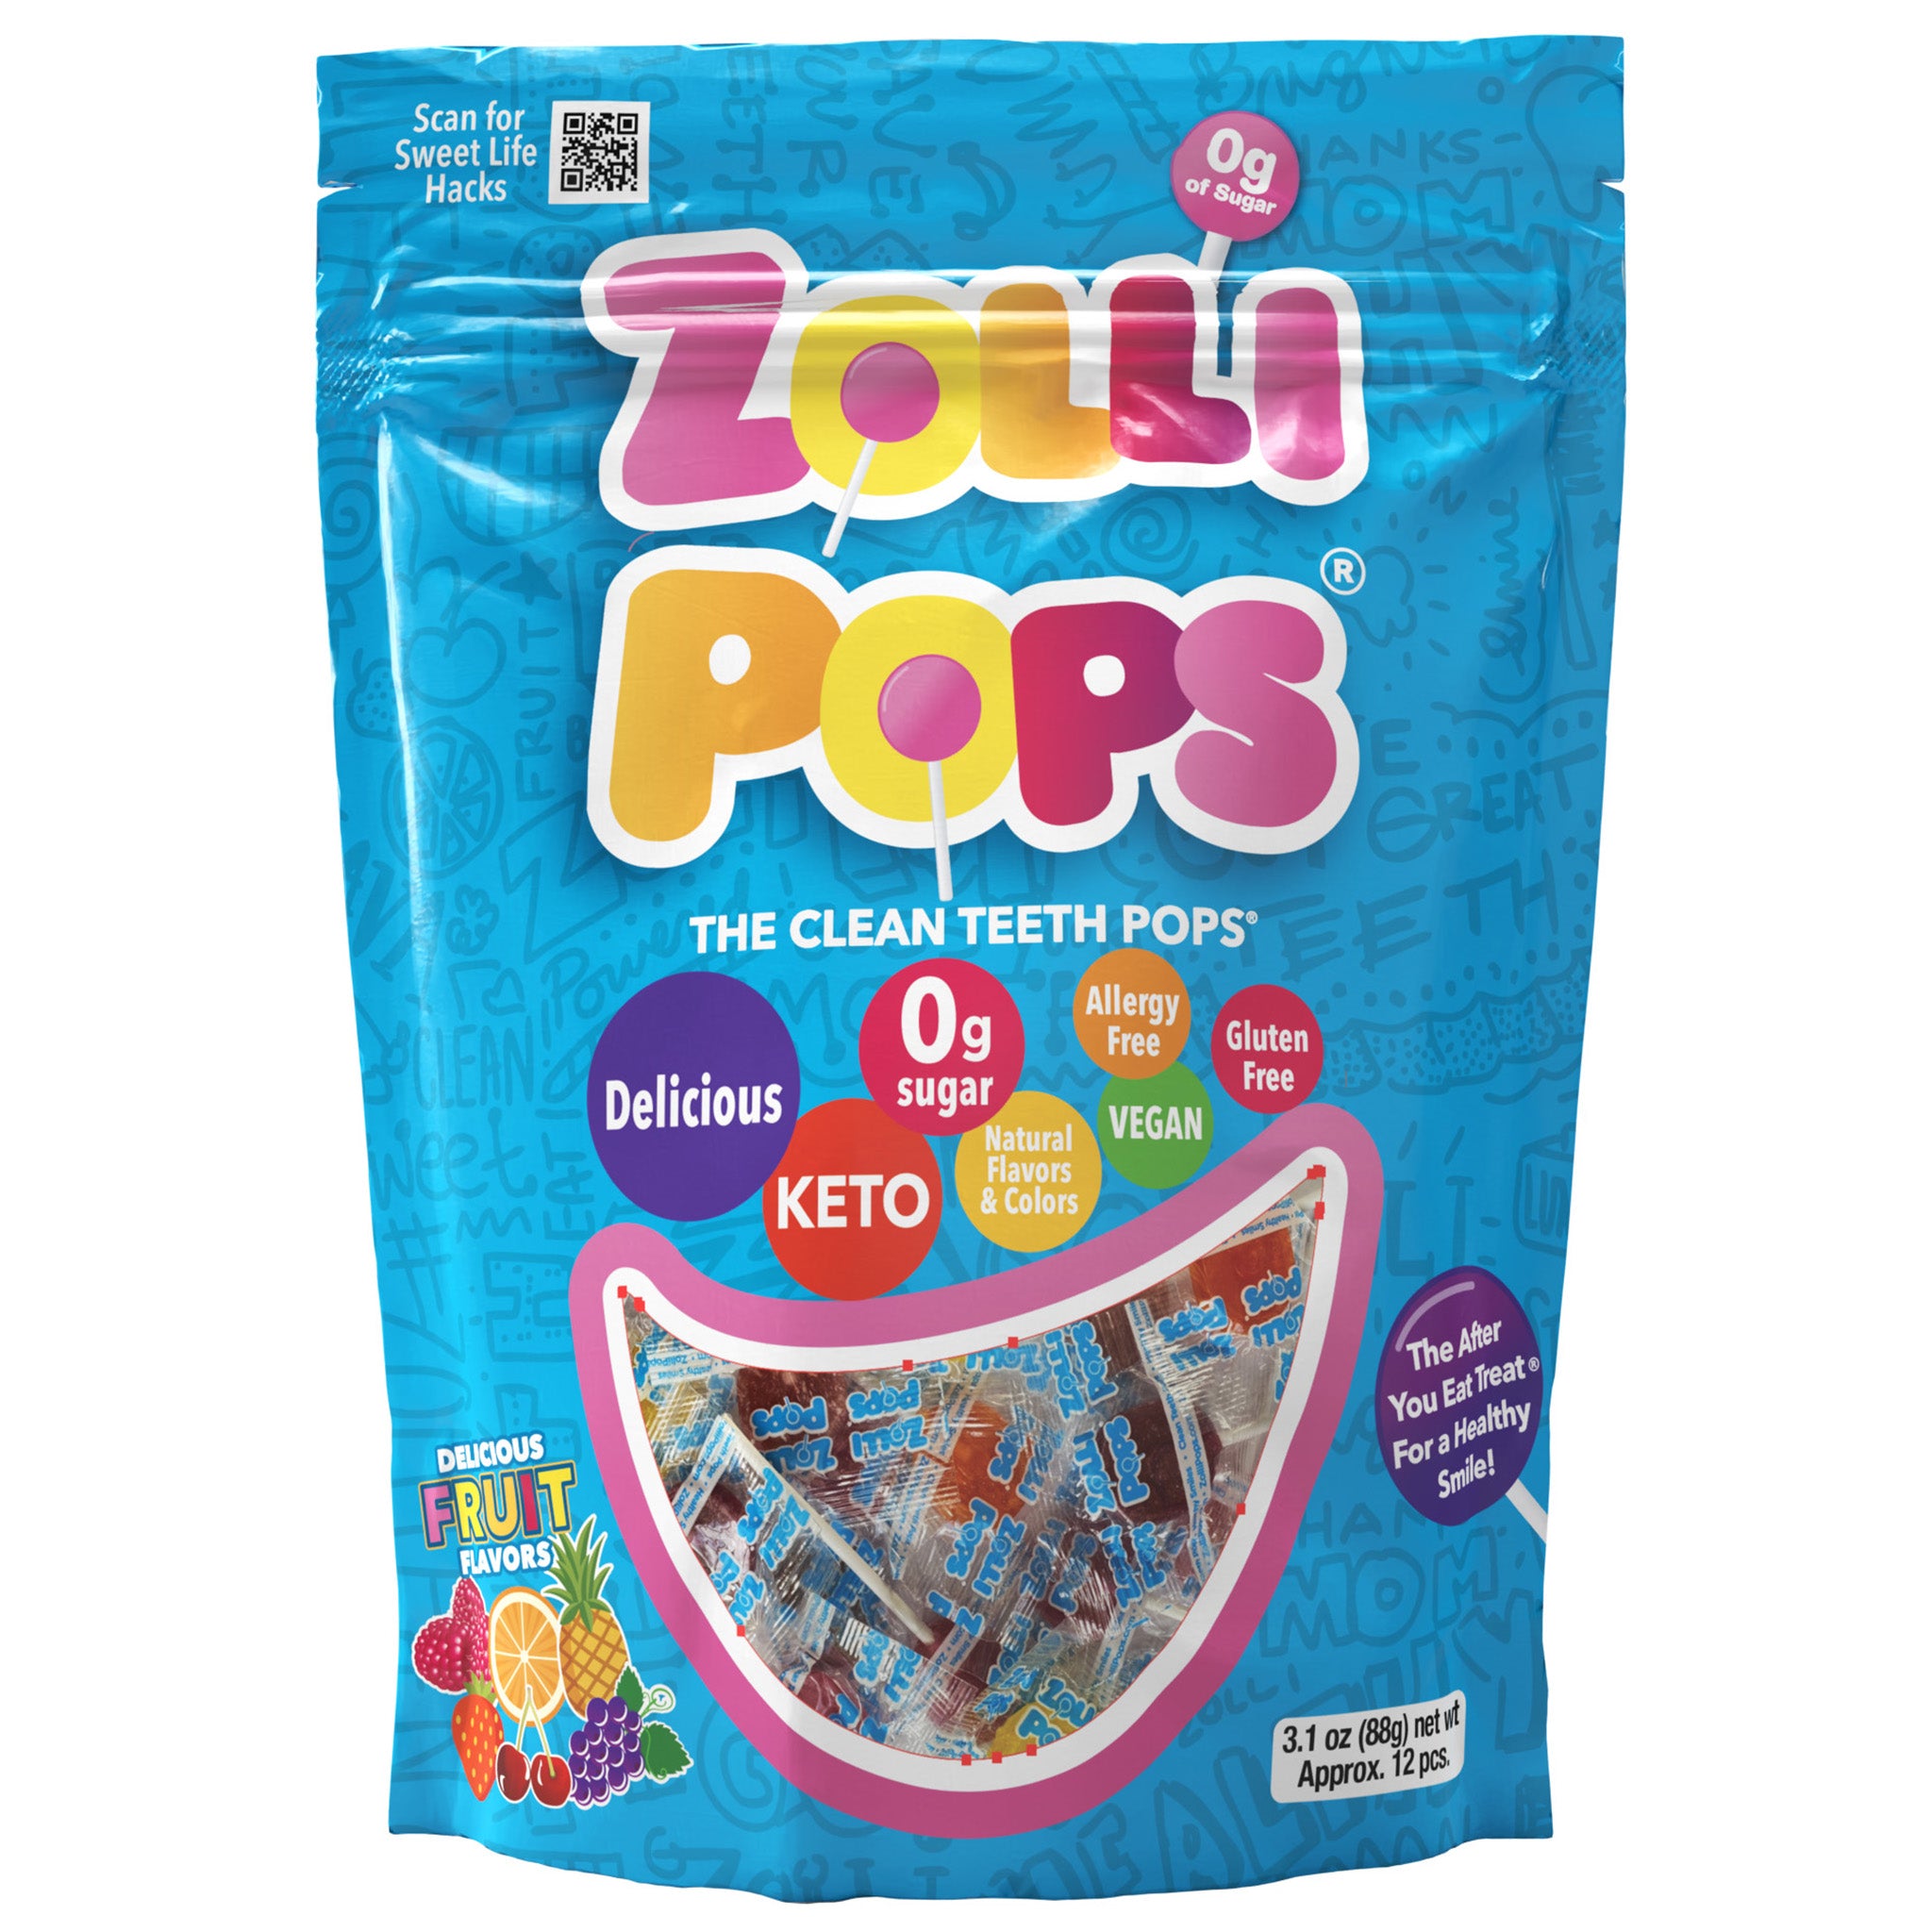 Zollipops the original Clean Teeth Lollipop in assorted fruit flavors